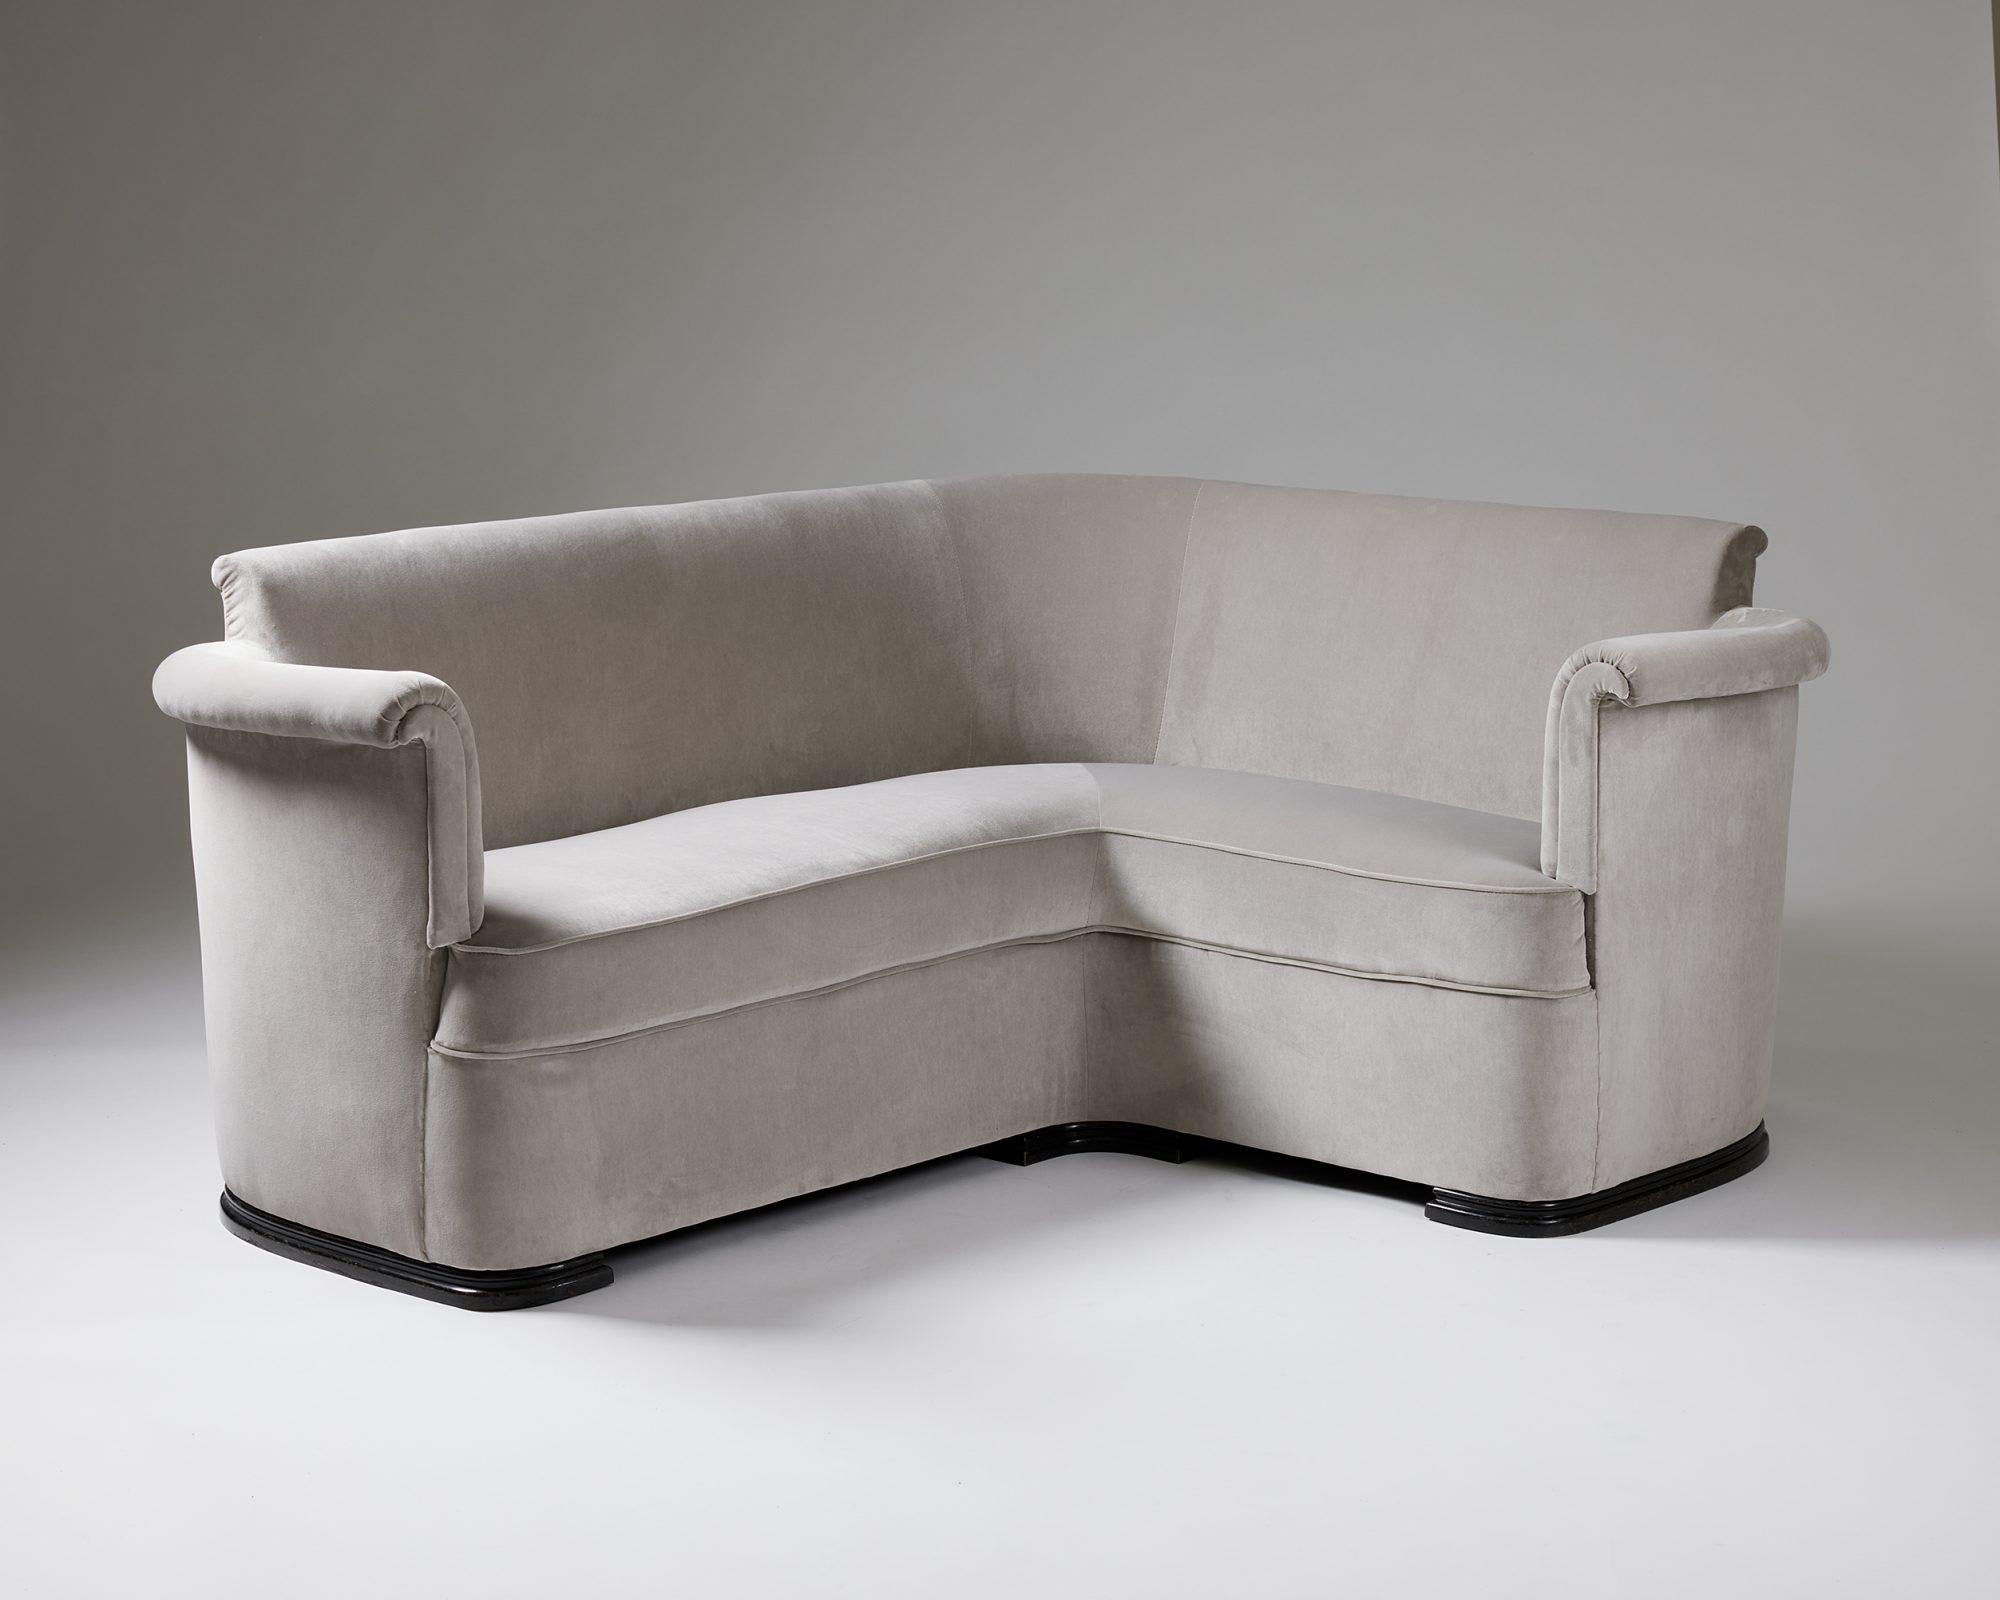 Sofa designed by Axel Einar Hjorth for Nordiska Kompaniet,
Sweden, 1930s.

Velvet Upholstery.

Dimensions: 
H: 73 cm / 2' 4 3/4''
W: 168.5 cm / 5' 6 1/4''
D: 68 cm / 2' 2 3/4''
Depth of the corner side: 136 cm / 4' 5 1/2''
SH: 43 cm /